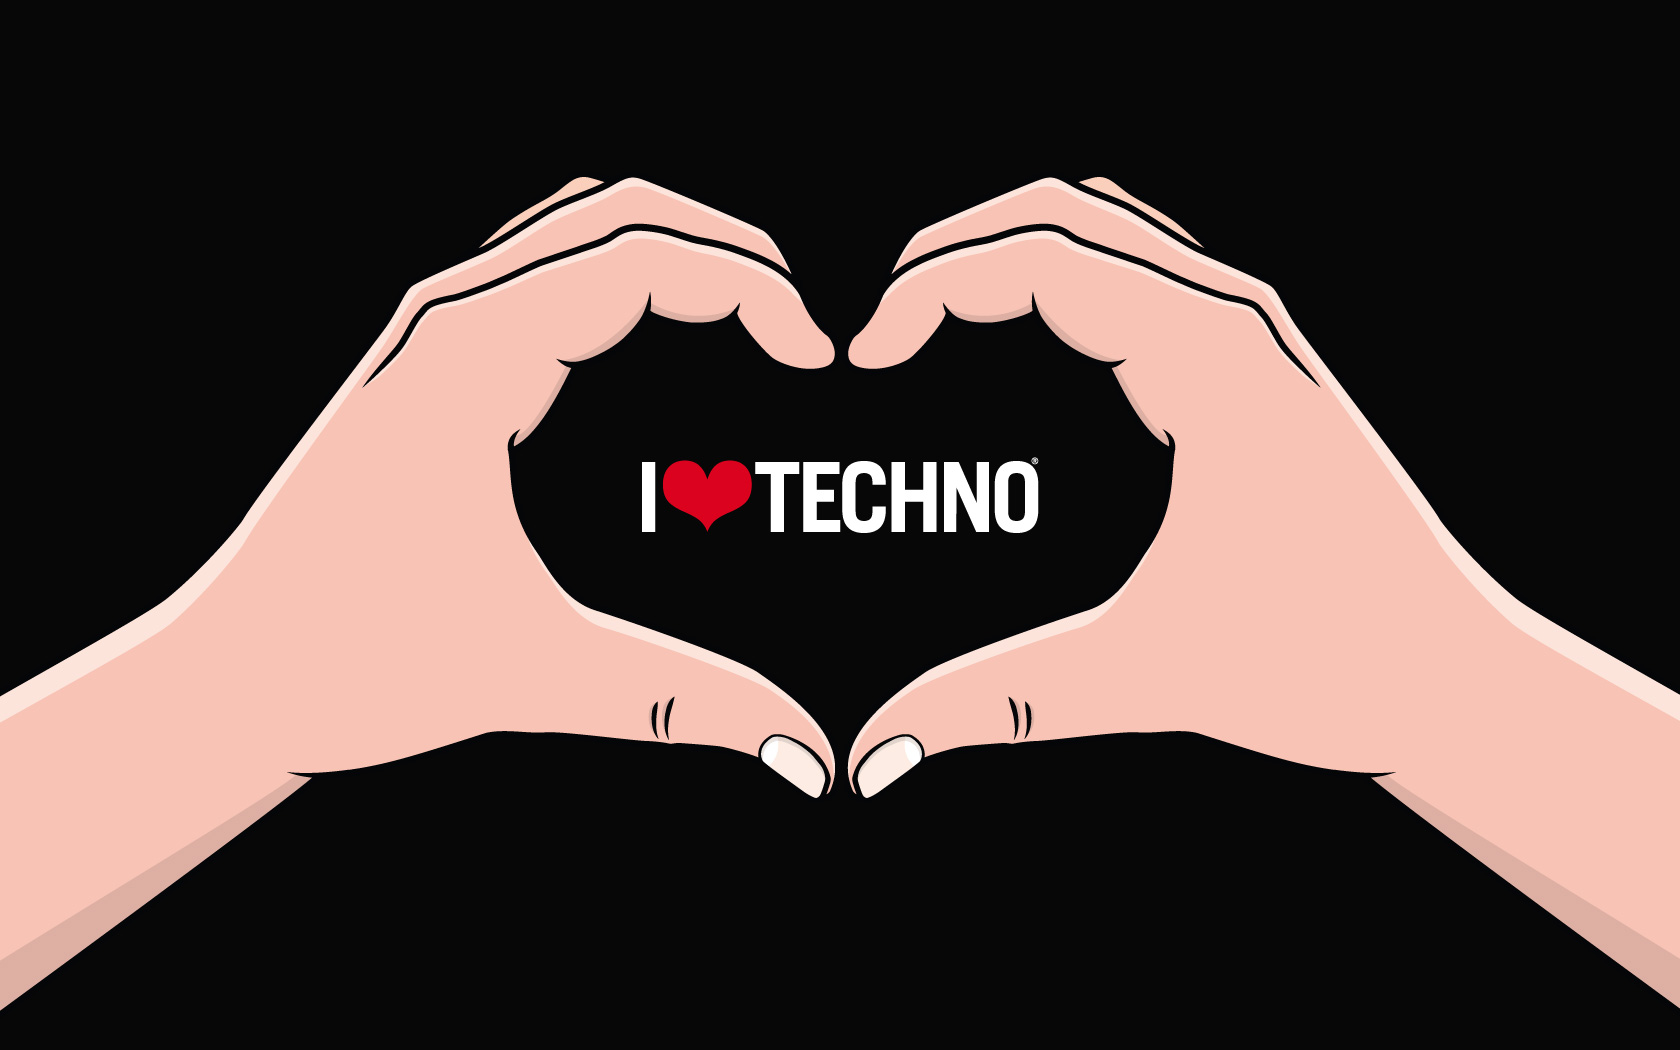 Love Techno 2010 Logo Wallpaper 1680x1050 I Love Techno 2010 Logo